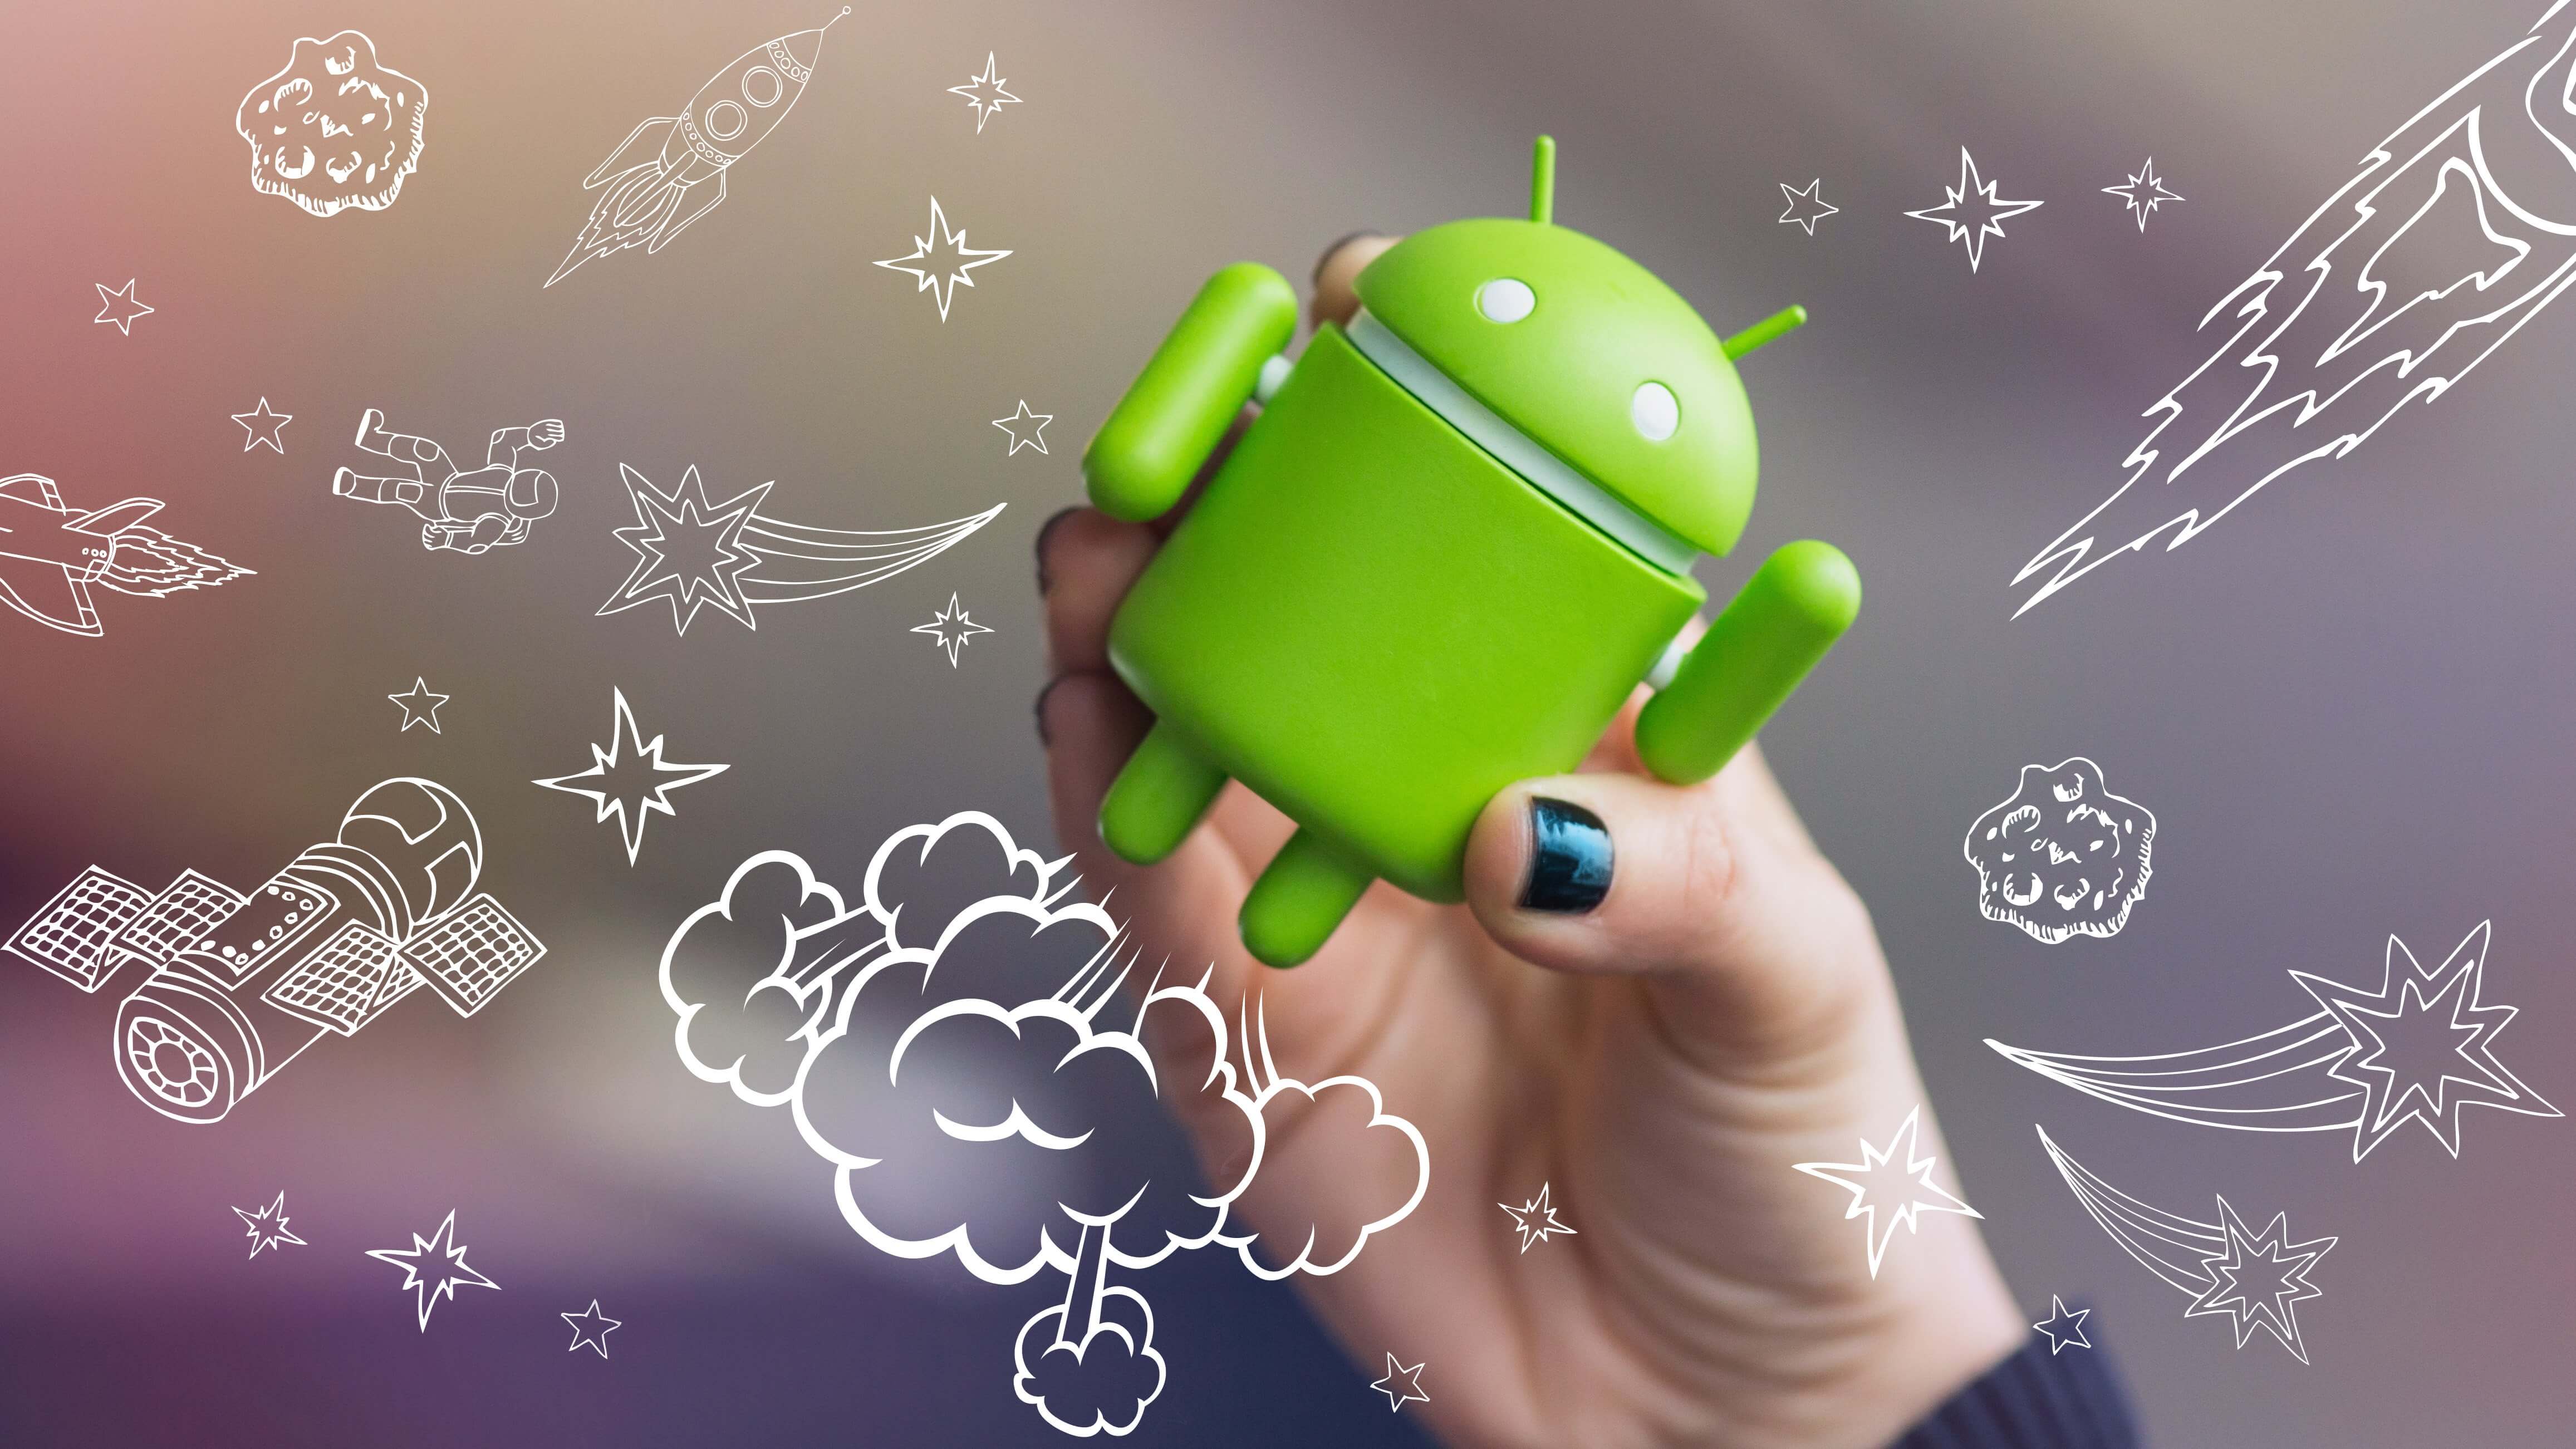 Szybsze uruchamianie systemu Android szybciej